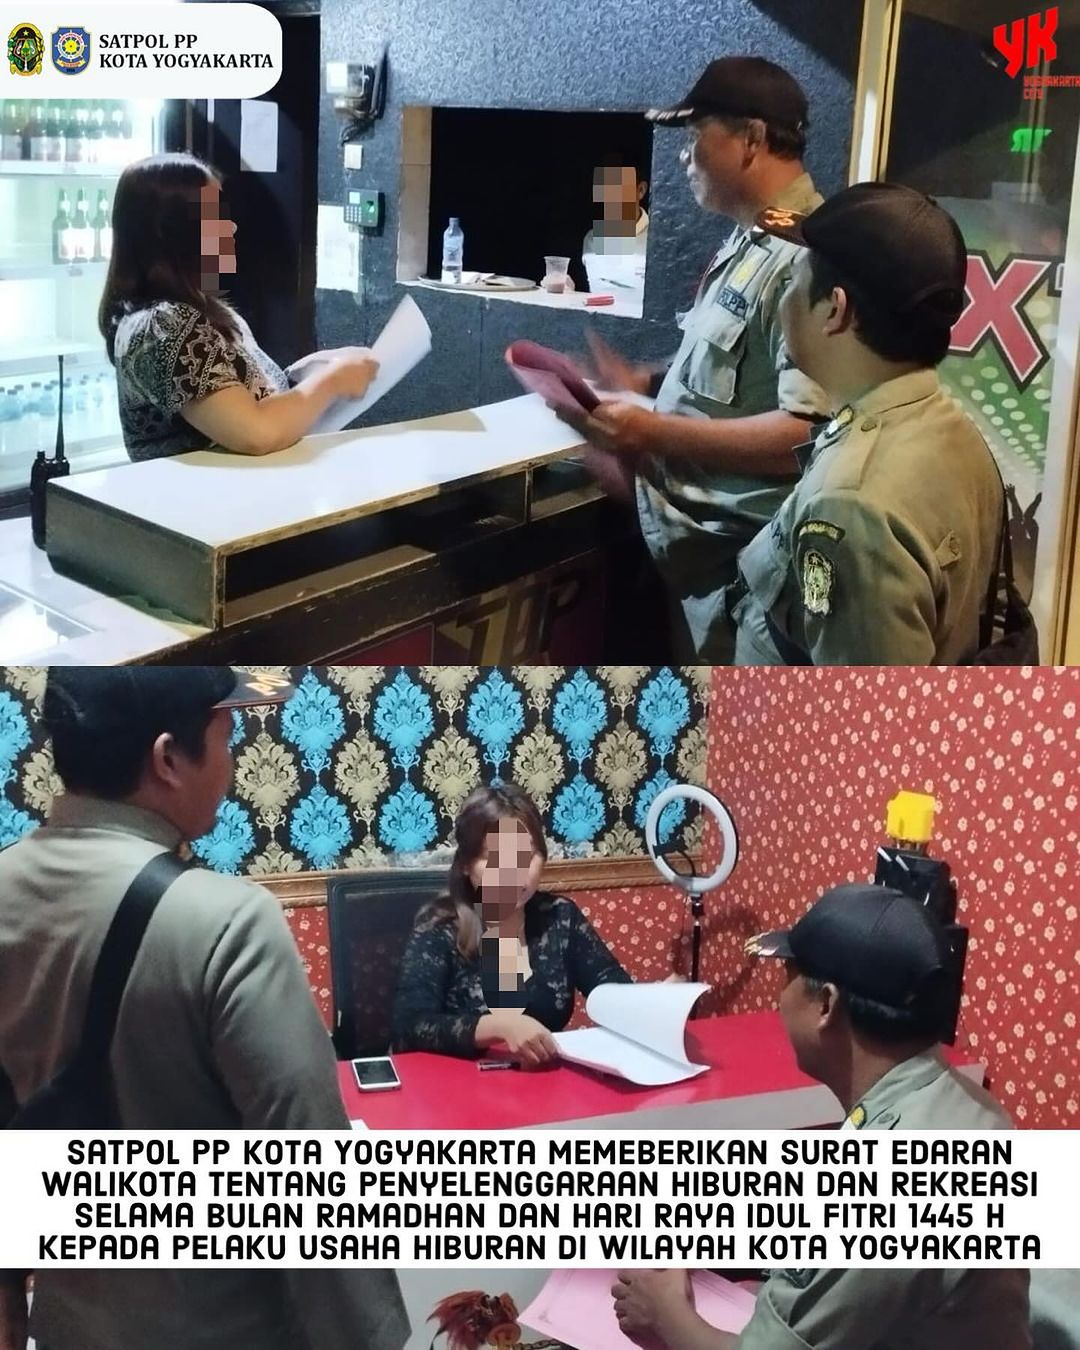 Surat Edaran Walikota Yogyakarta Mengatur Penyelenggaraan Hiburan Selama Bulan Ramadhan dan Idul Fitri